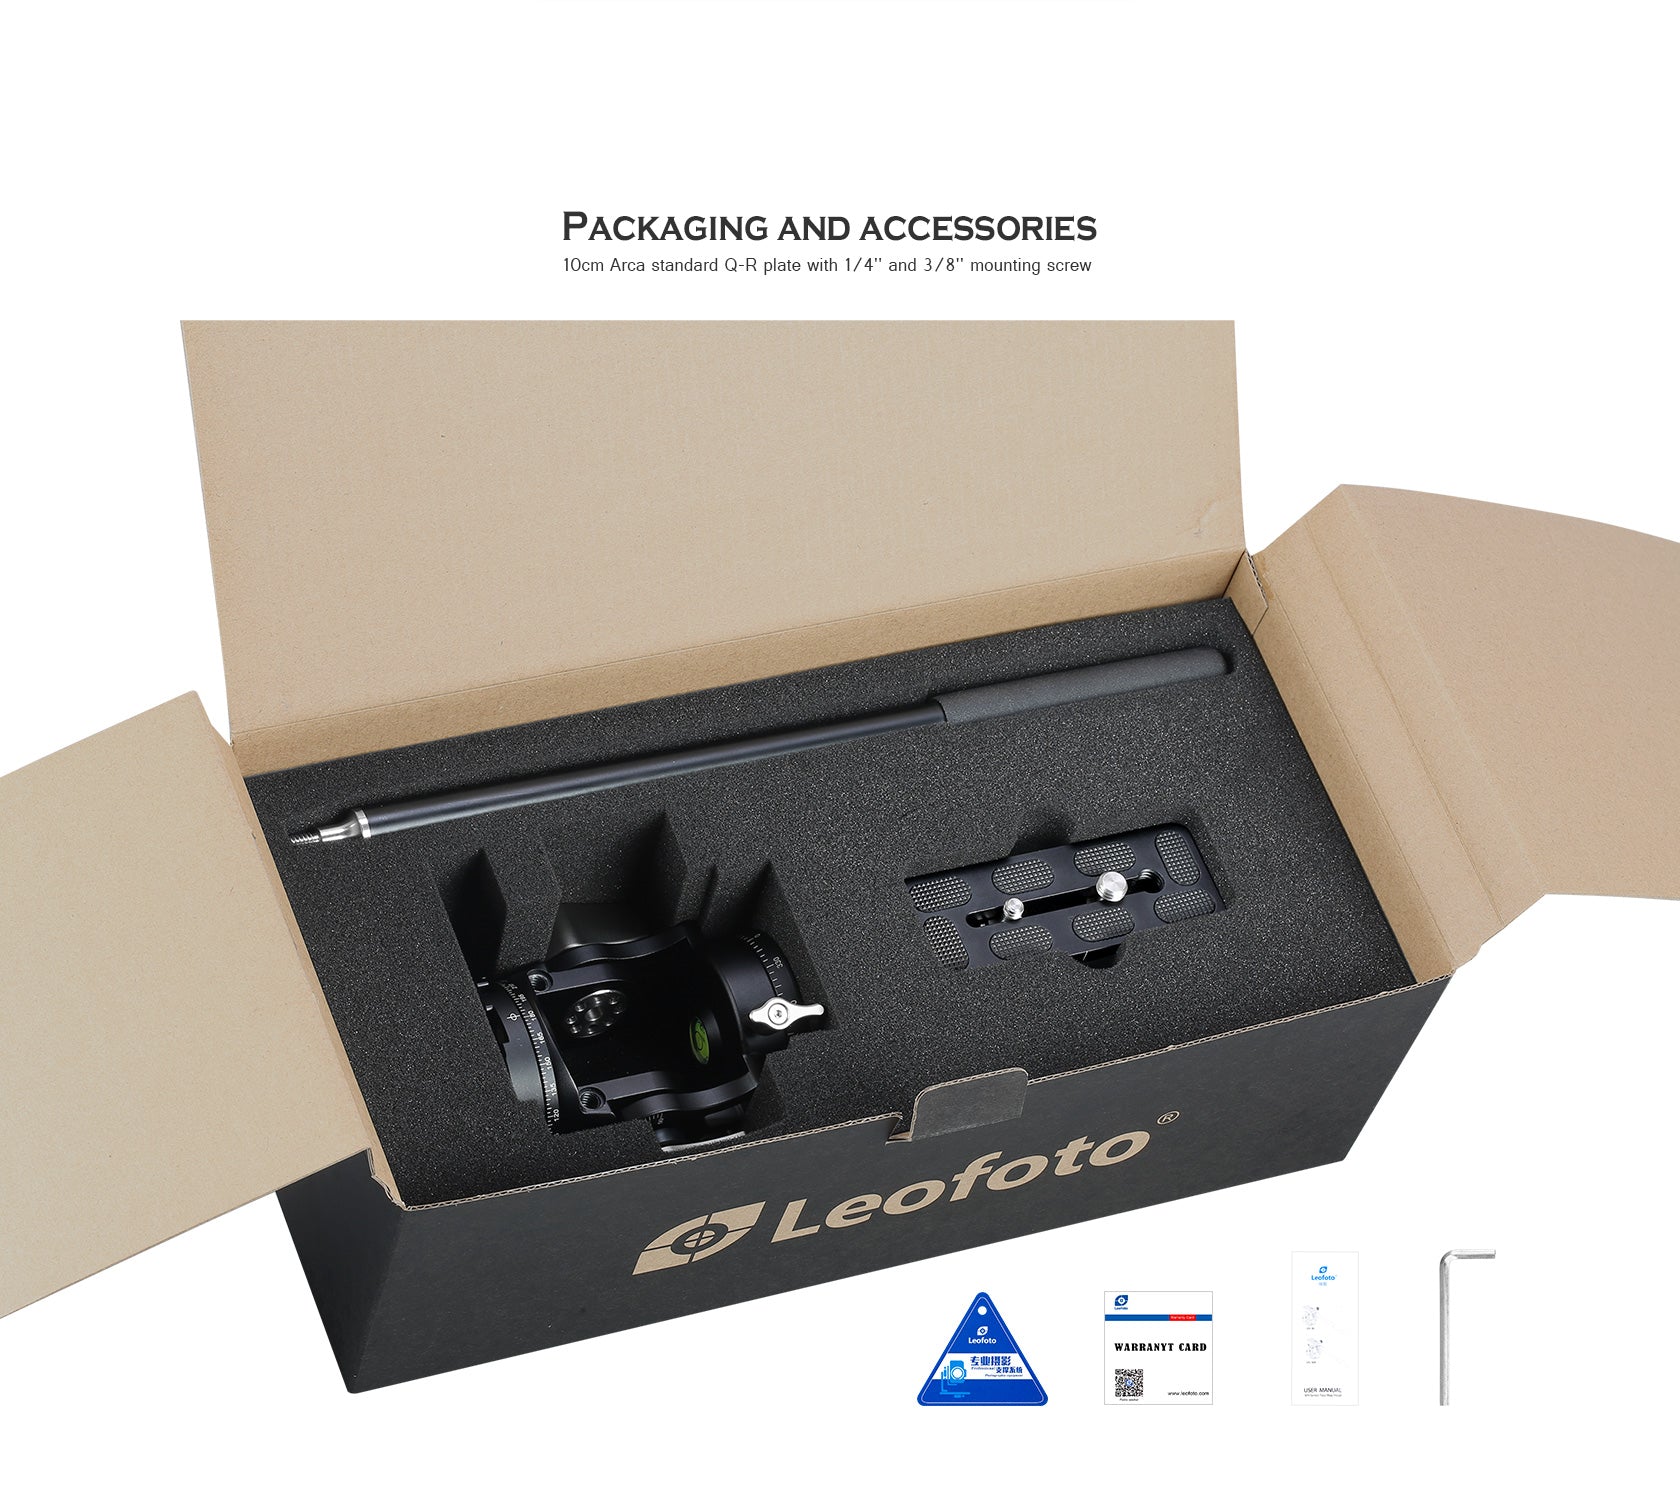 Leofoto VH-30 / VH-30N Two-Way Tele Lens Head | Arca Compatible